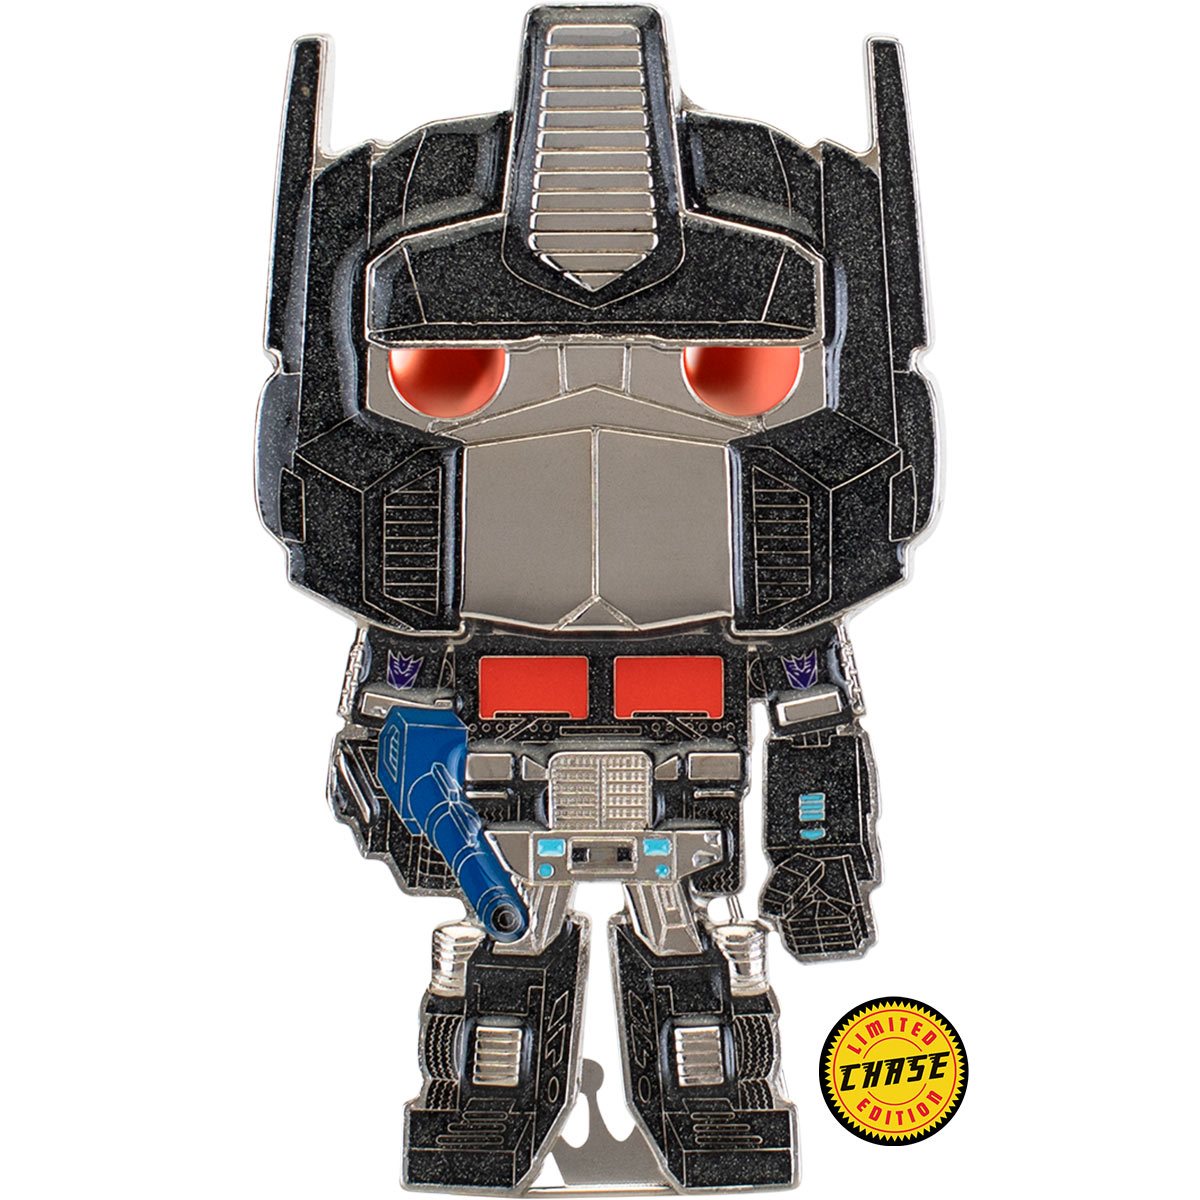 Funko Pop Pin: Transformers - Optimus Prime Esmaltado